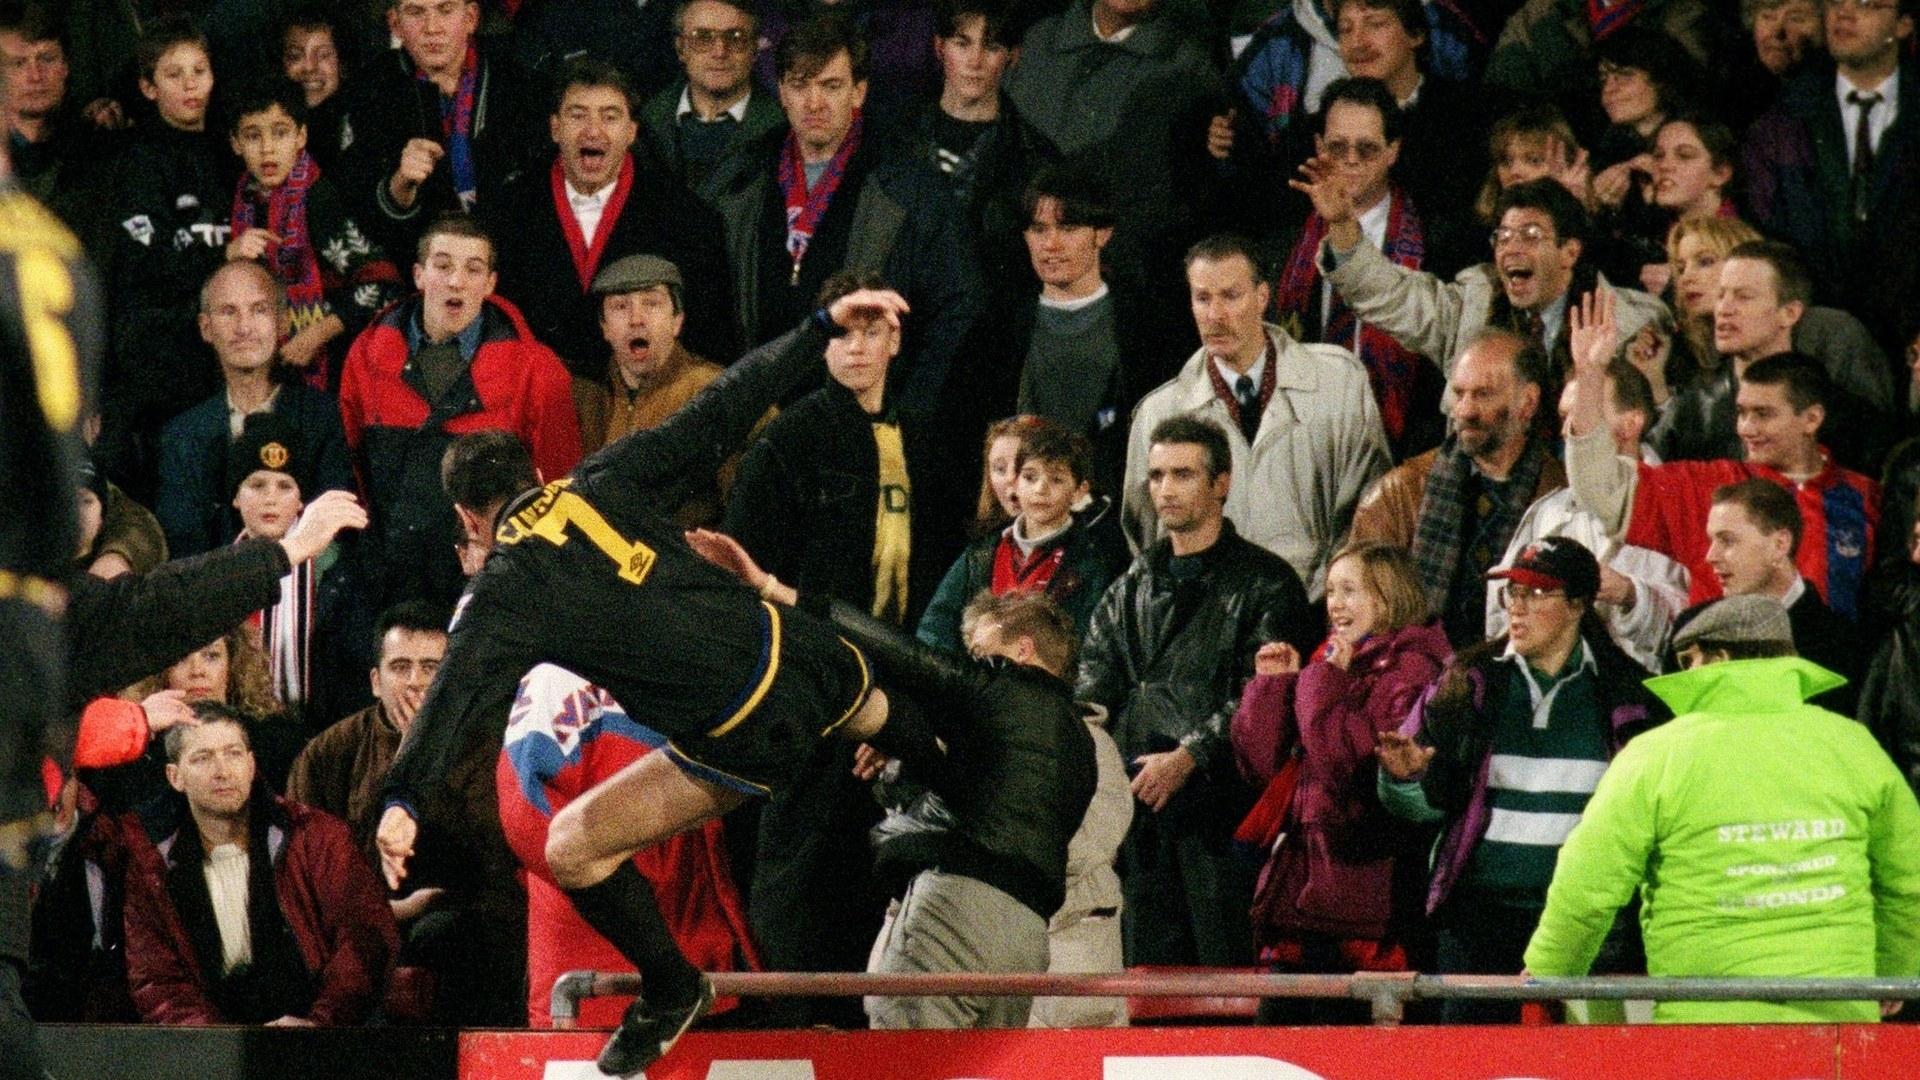 Éric Cantona atirou-se a um adepto no jogo do United contra o Crystal Palace, em janeiro de 1995.